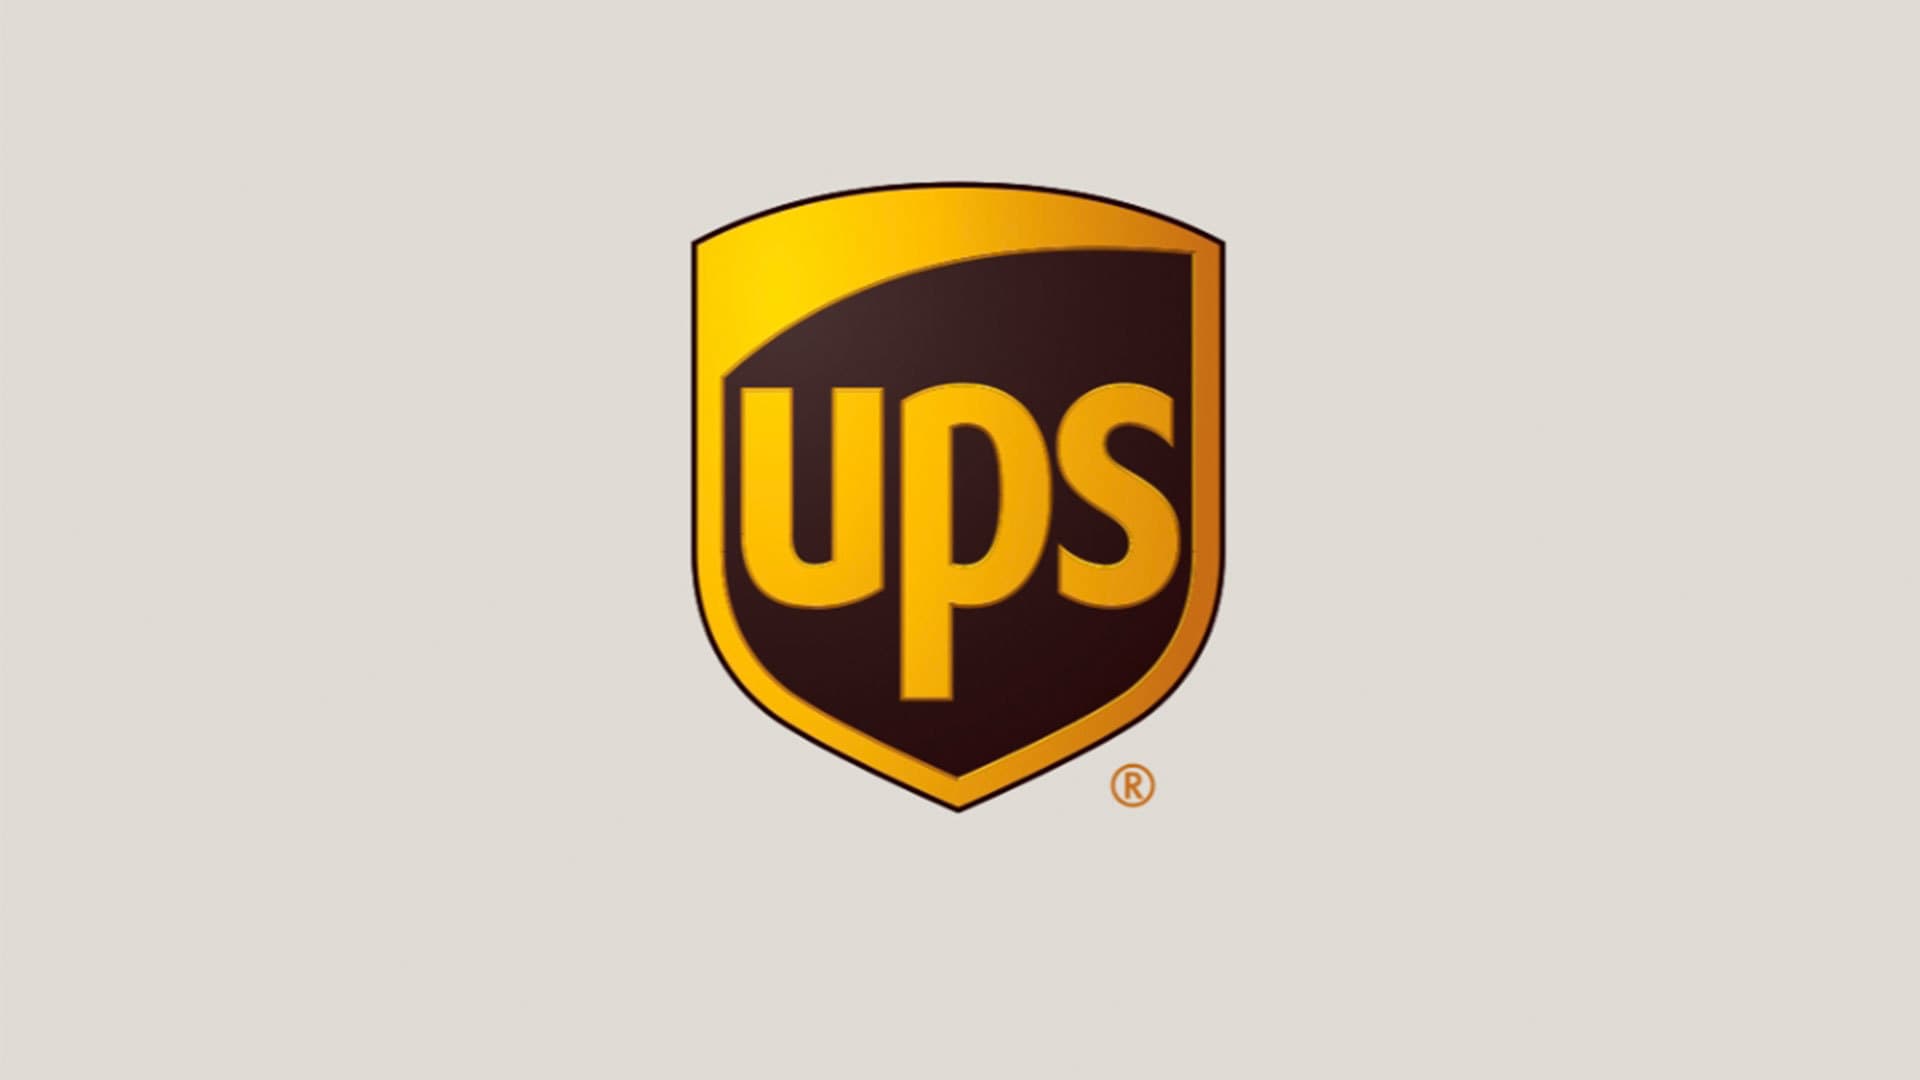 De UPS-applicatie: alles dat je daarover wil weten